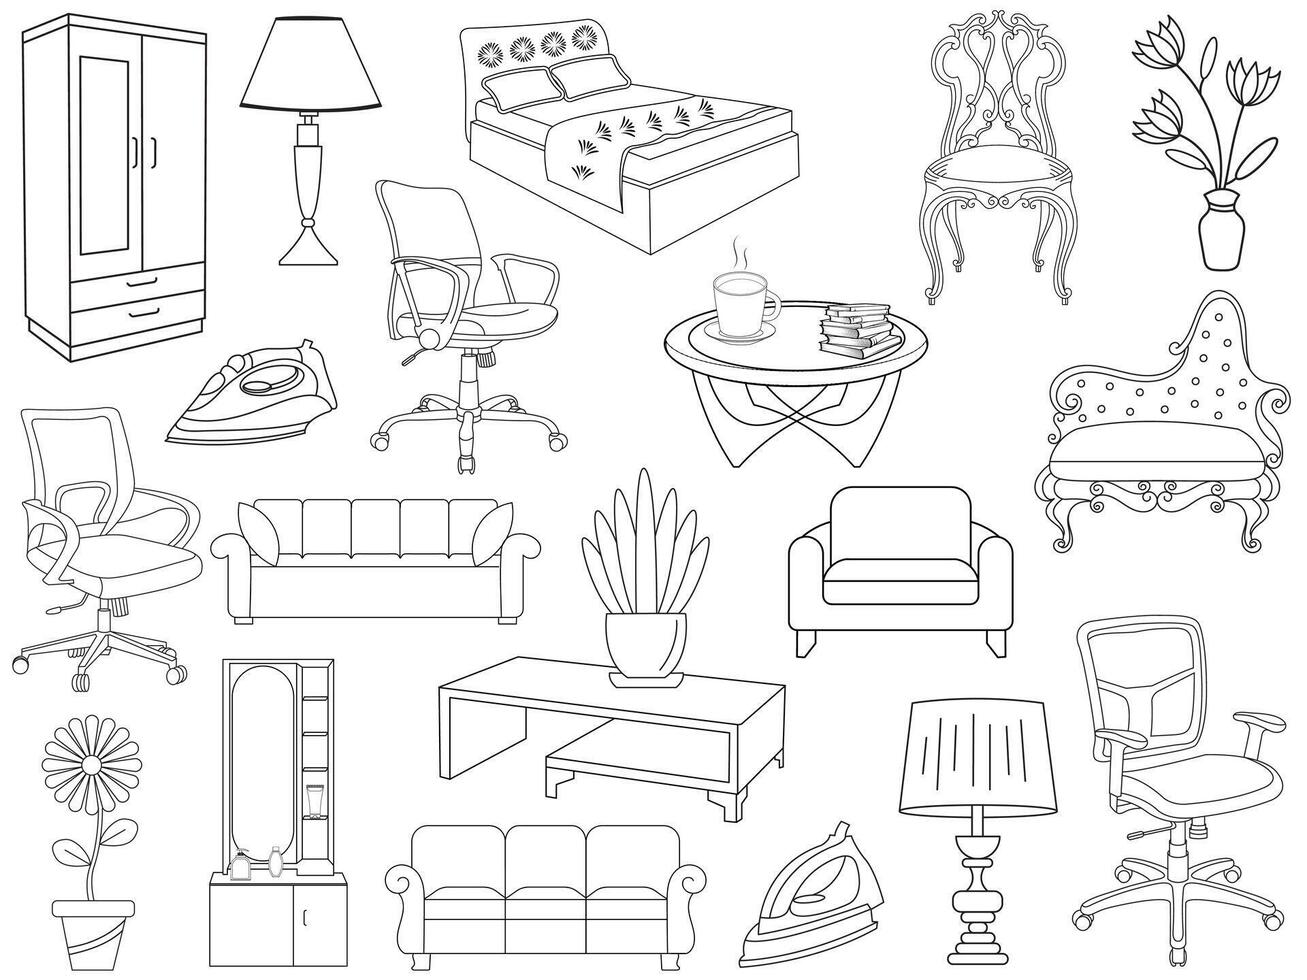 verzameling van elegant modern meubilair en huis interieur decoraties van trendy. keuken, slaapkamer, sofa tafel, boekenkast kast, stoel, matras, lampen, meubilair vector illustratie set.